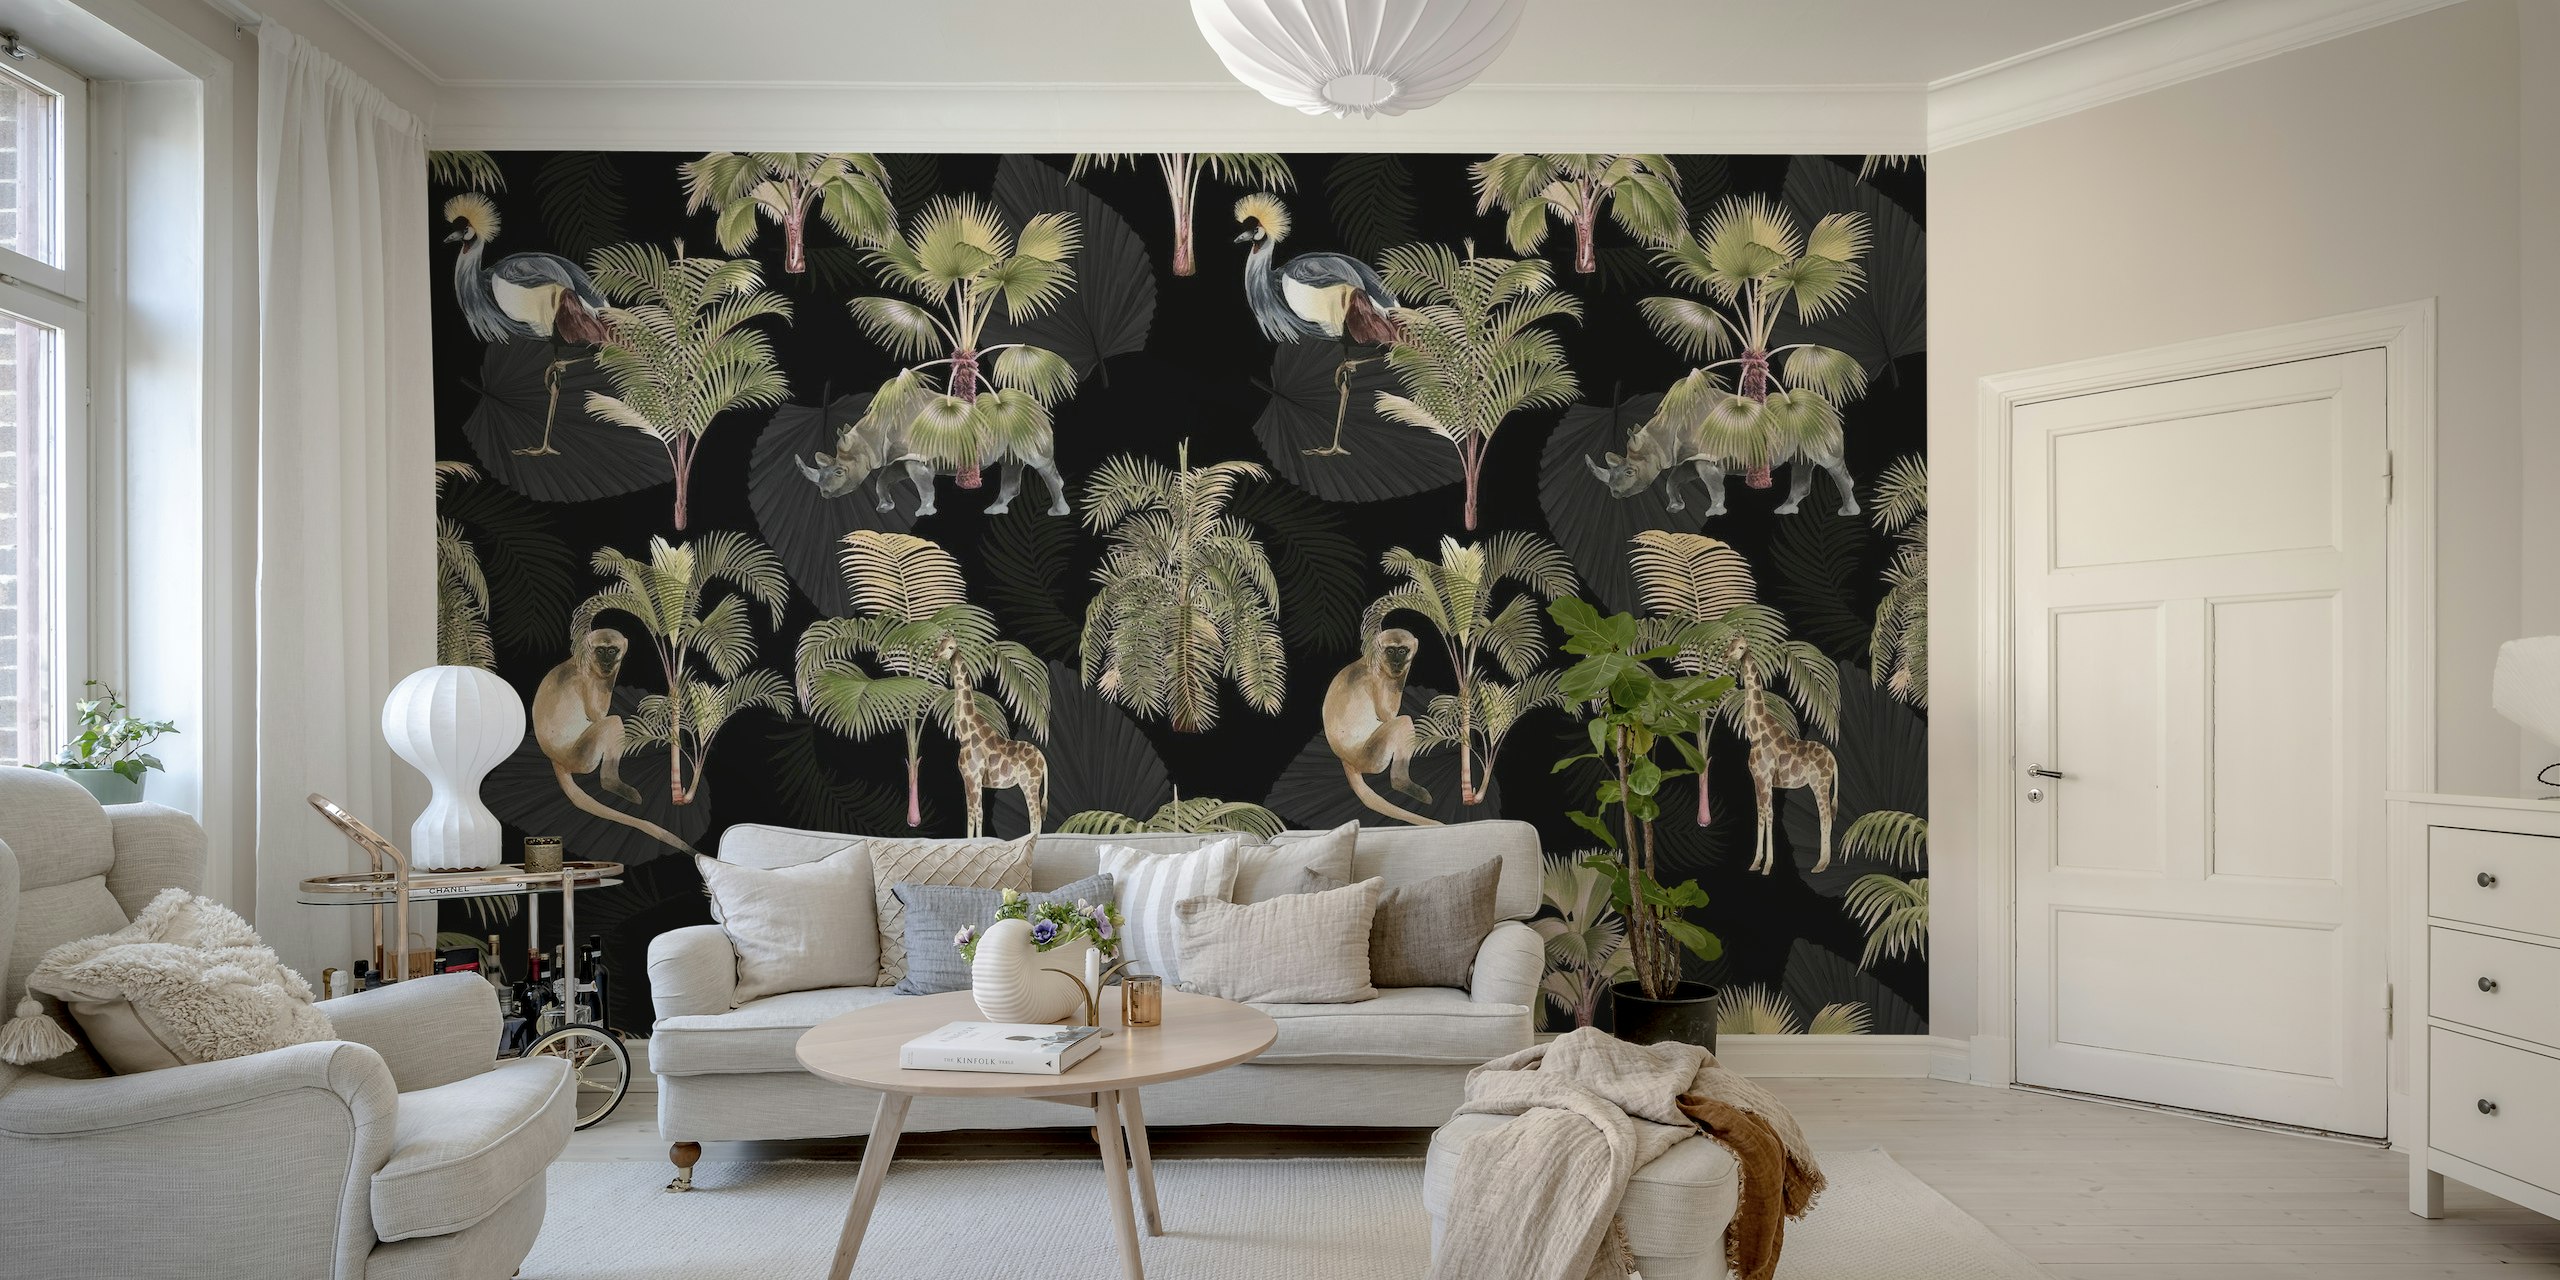 Eksotiske dyr og palmer på et mørkt baggrundsvægmaleri